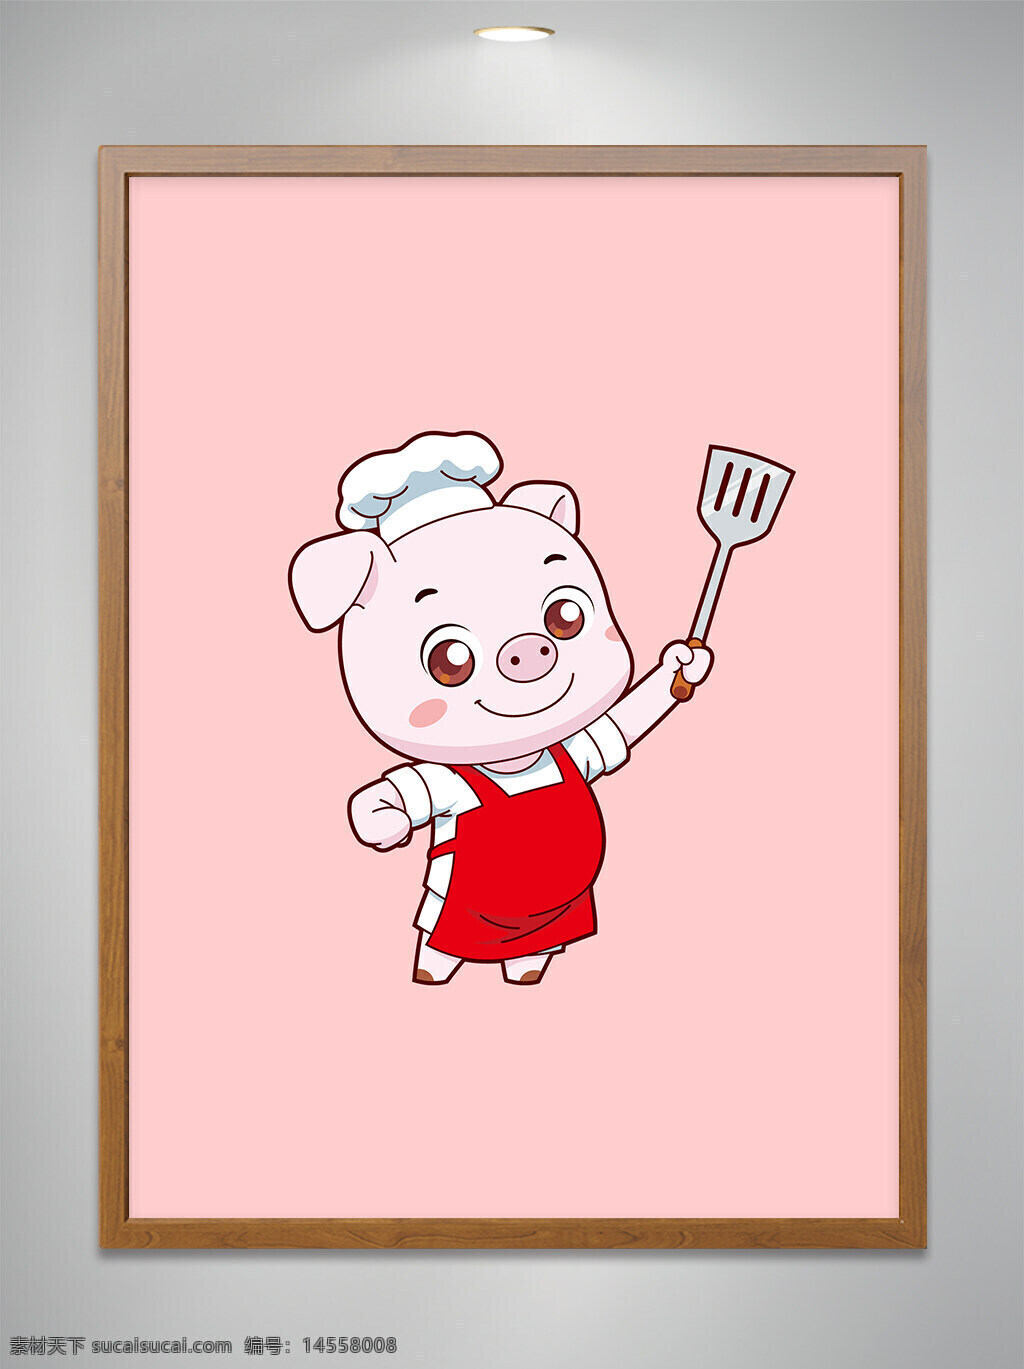 卡通原创 卡通吉祥物 卡通动物 卡通可爱小猪 卡通可爱小猪厨师 卡通可爱小猪厨师拿锅铲 餐饮 ai矢量图